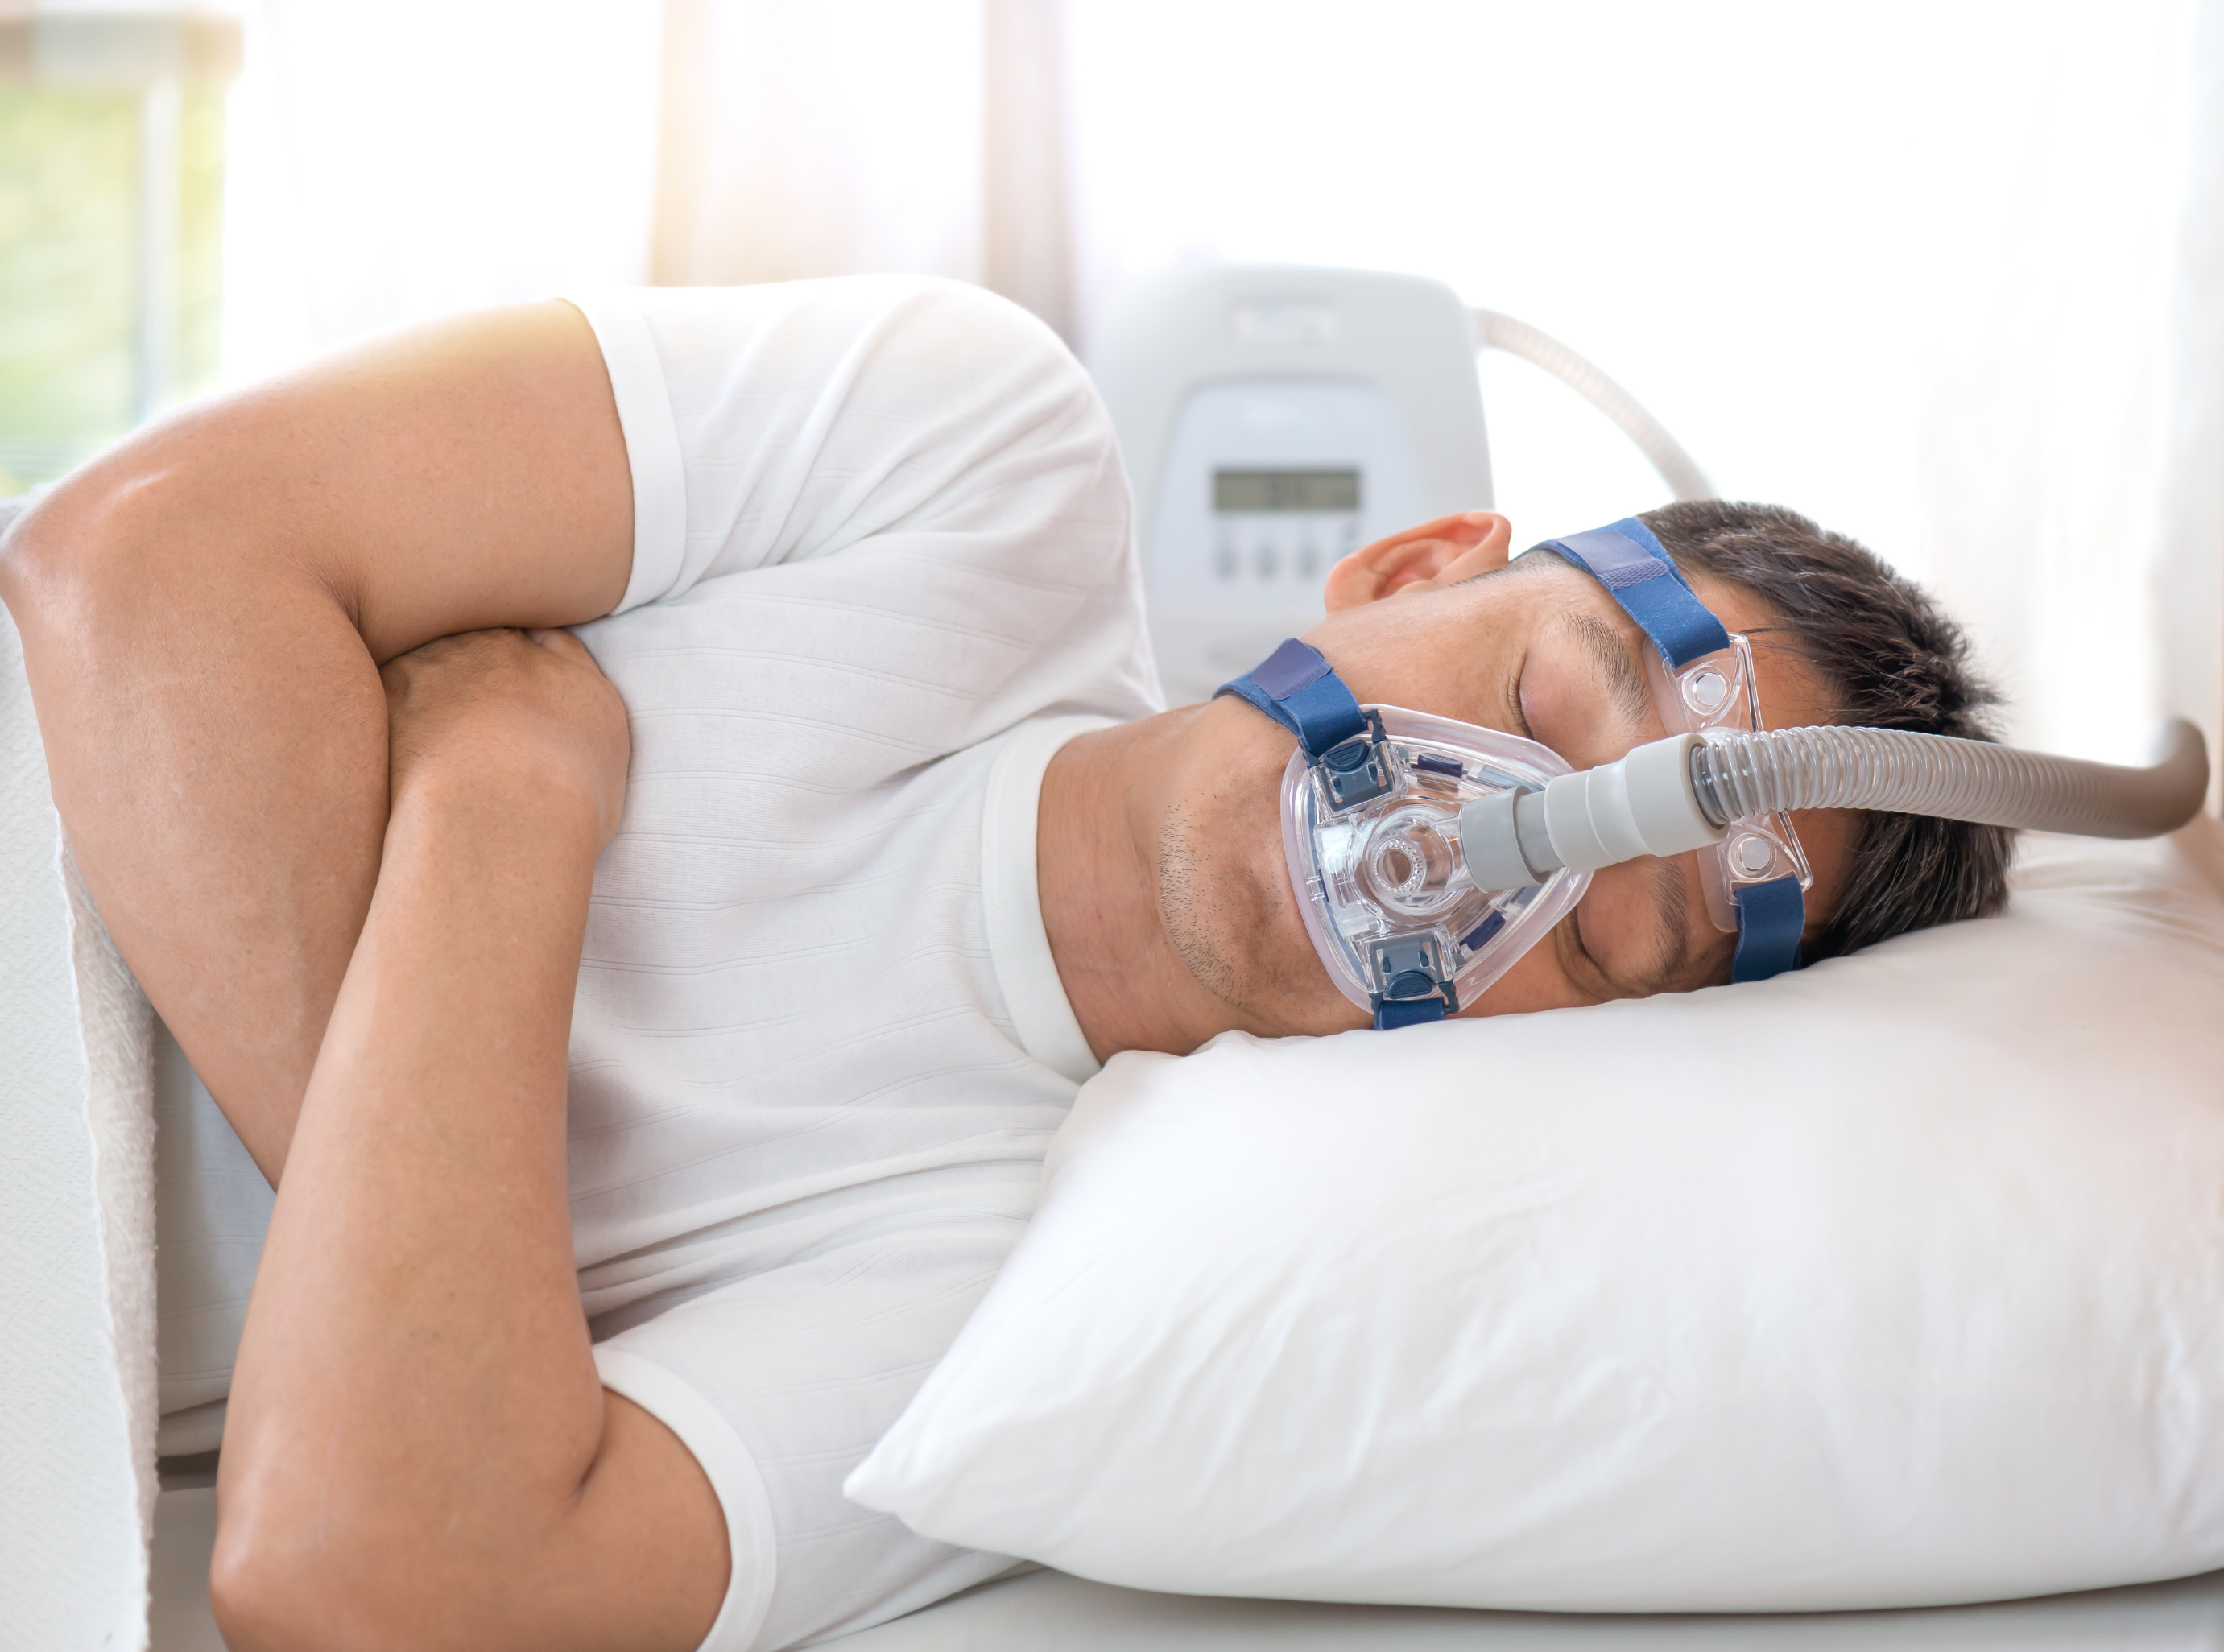 Cómo puede ayudarte la terapia CPAP contra la apnea del sueño? - Esteve  Teijin